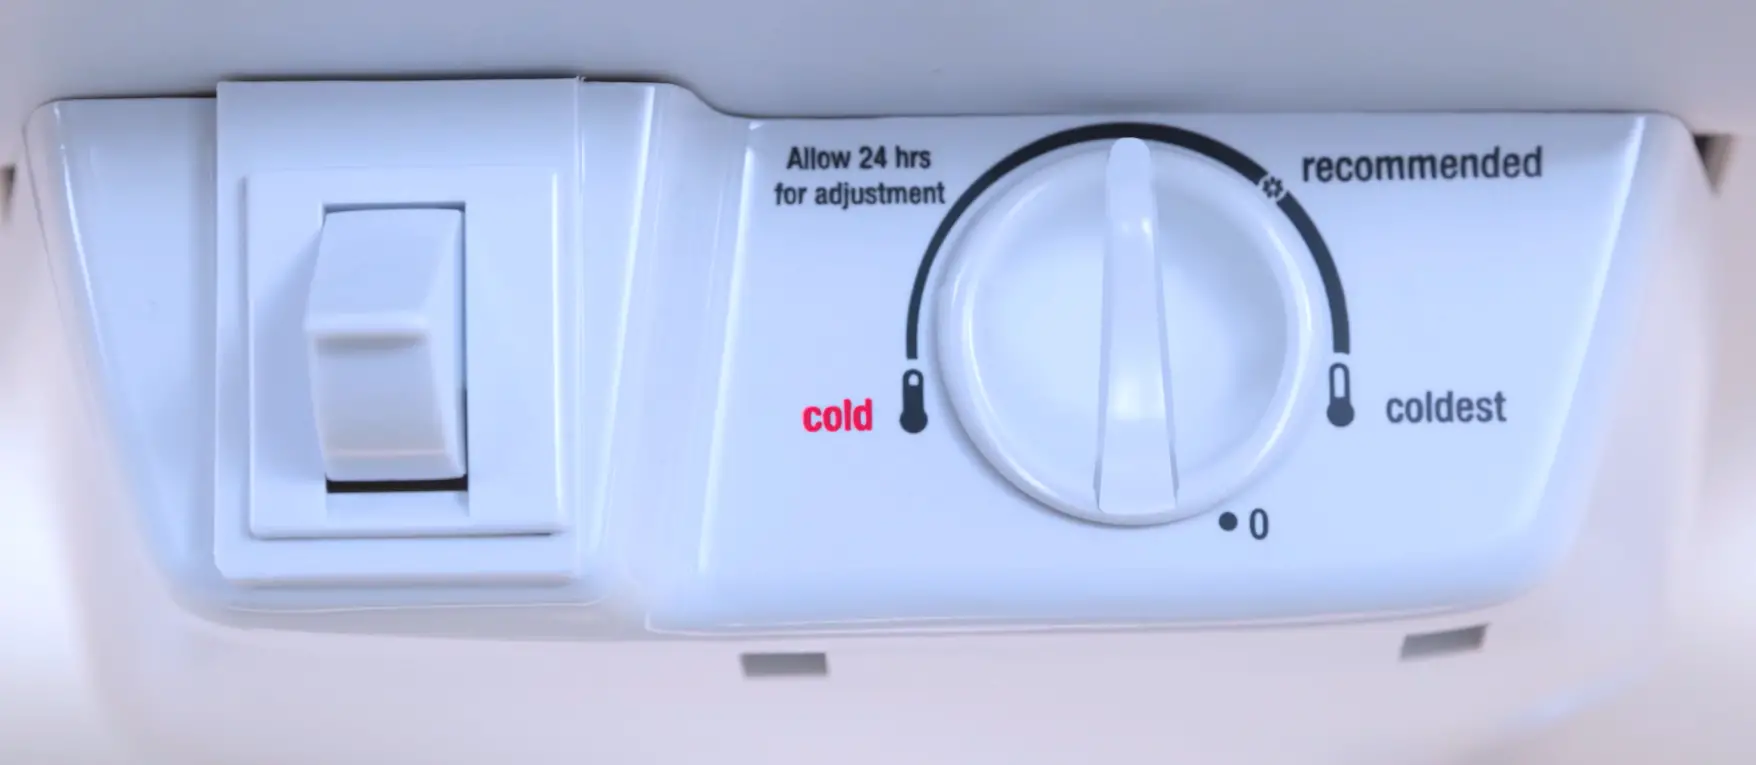 frigidaire refrigerator temperature